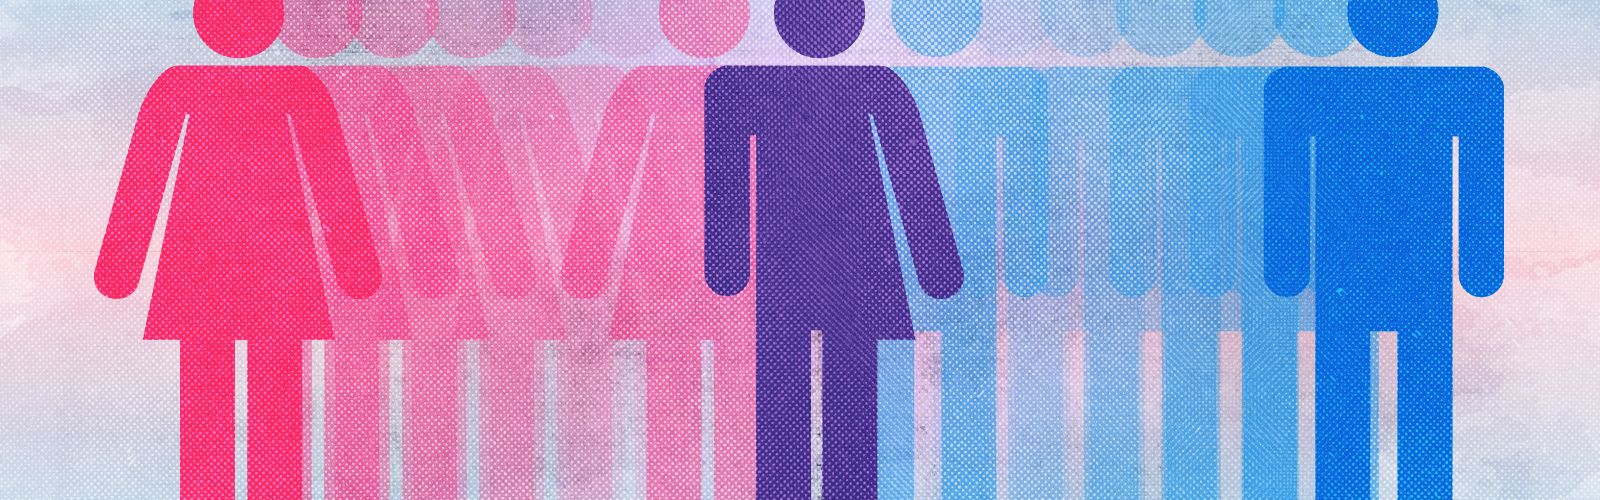 160425123836-transgender-bathroom-illustration